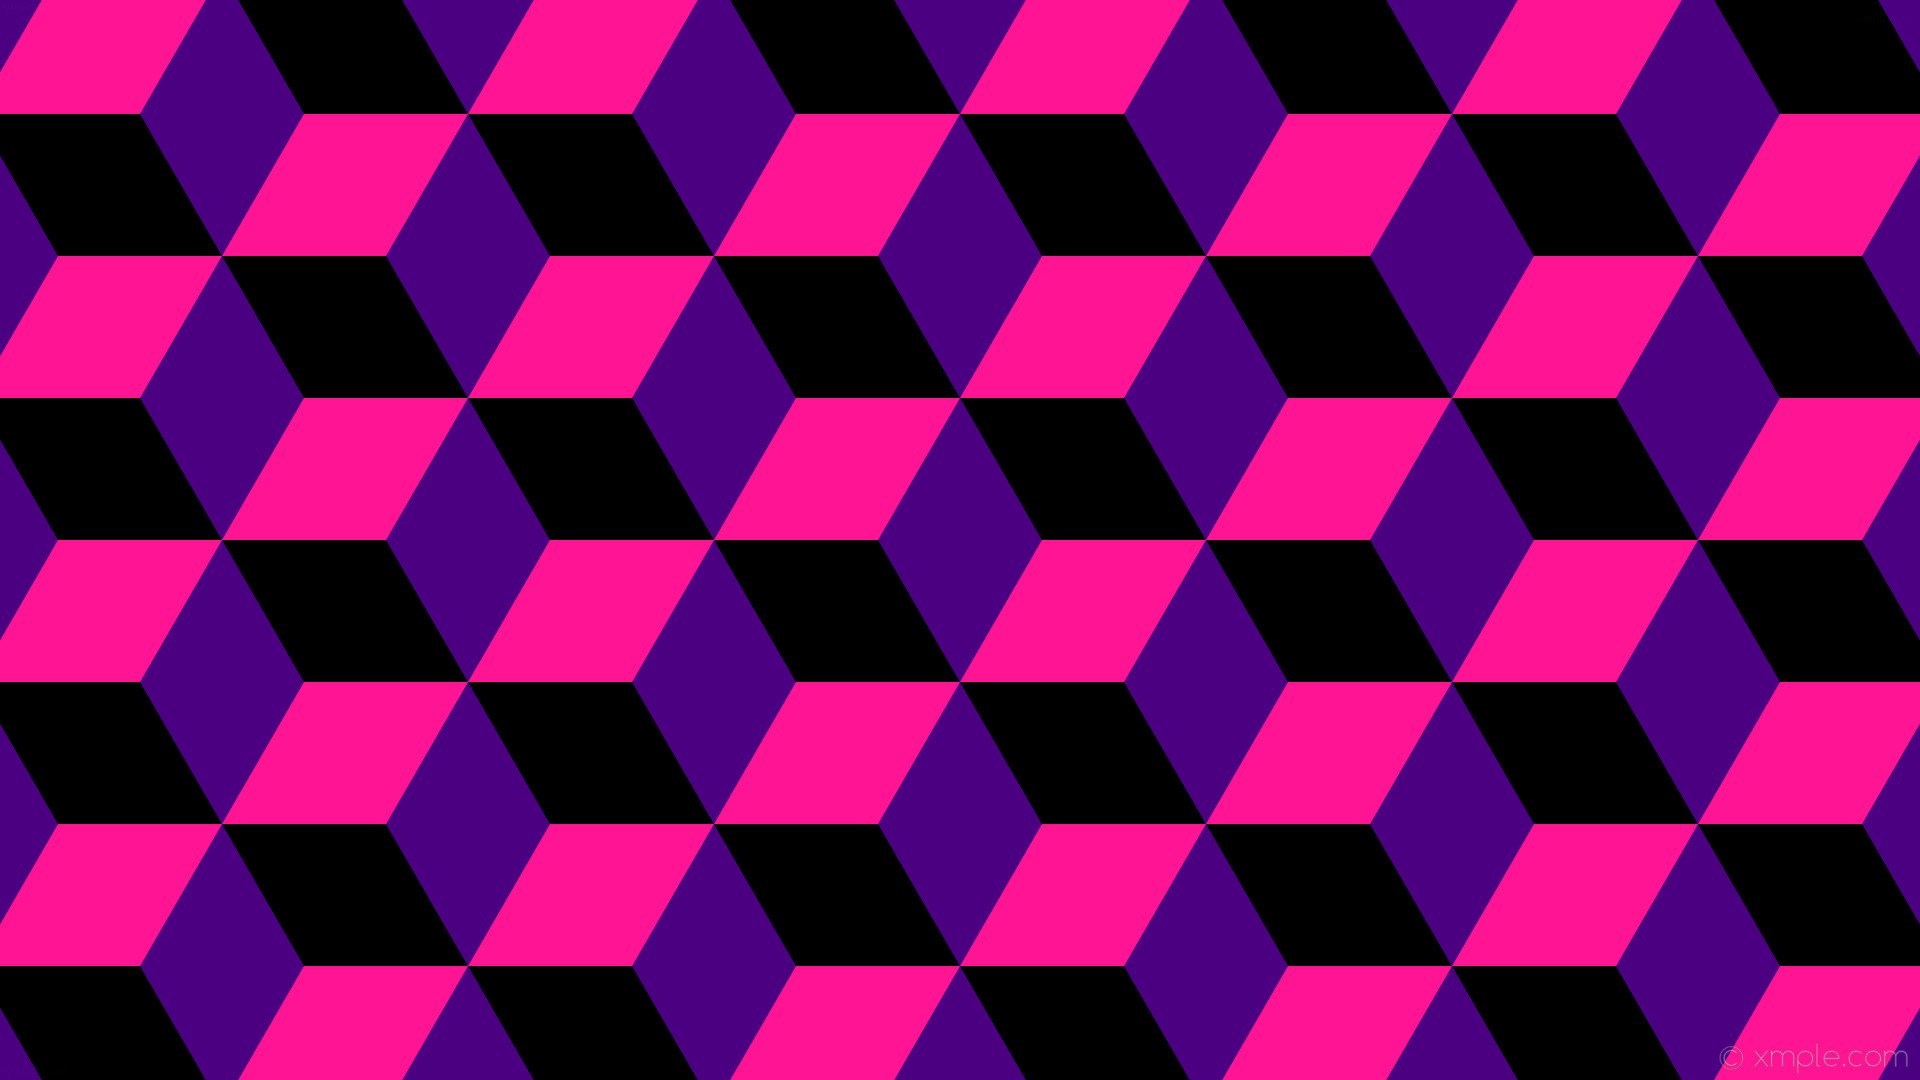 1920x1080 wallpaper purple 3d cubes pink black indigo deep pink #4b0082 #ff1493  #000000 270